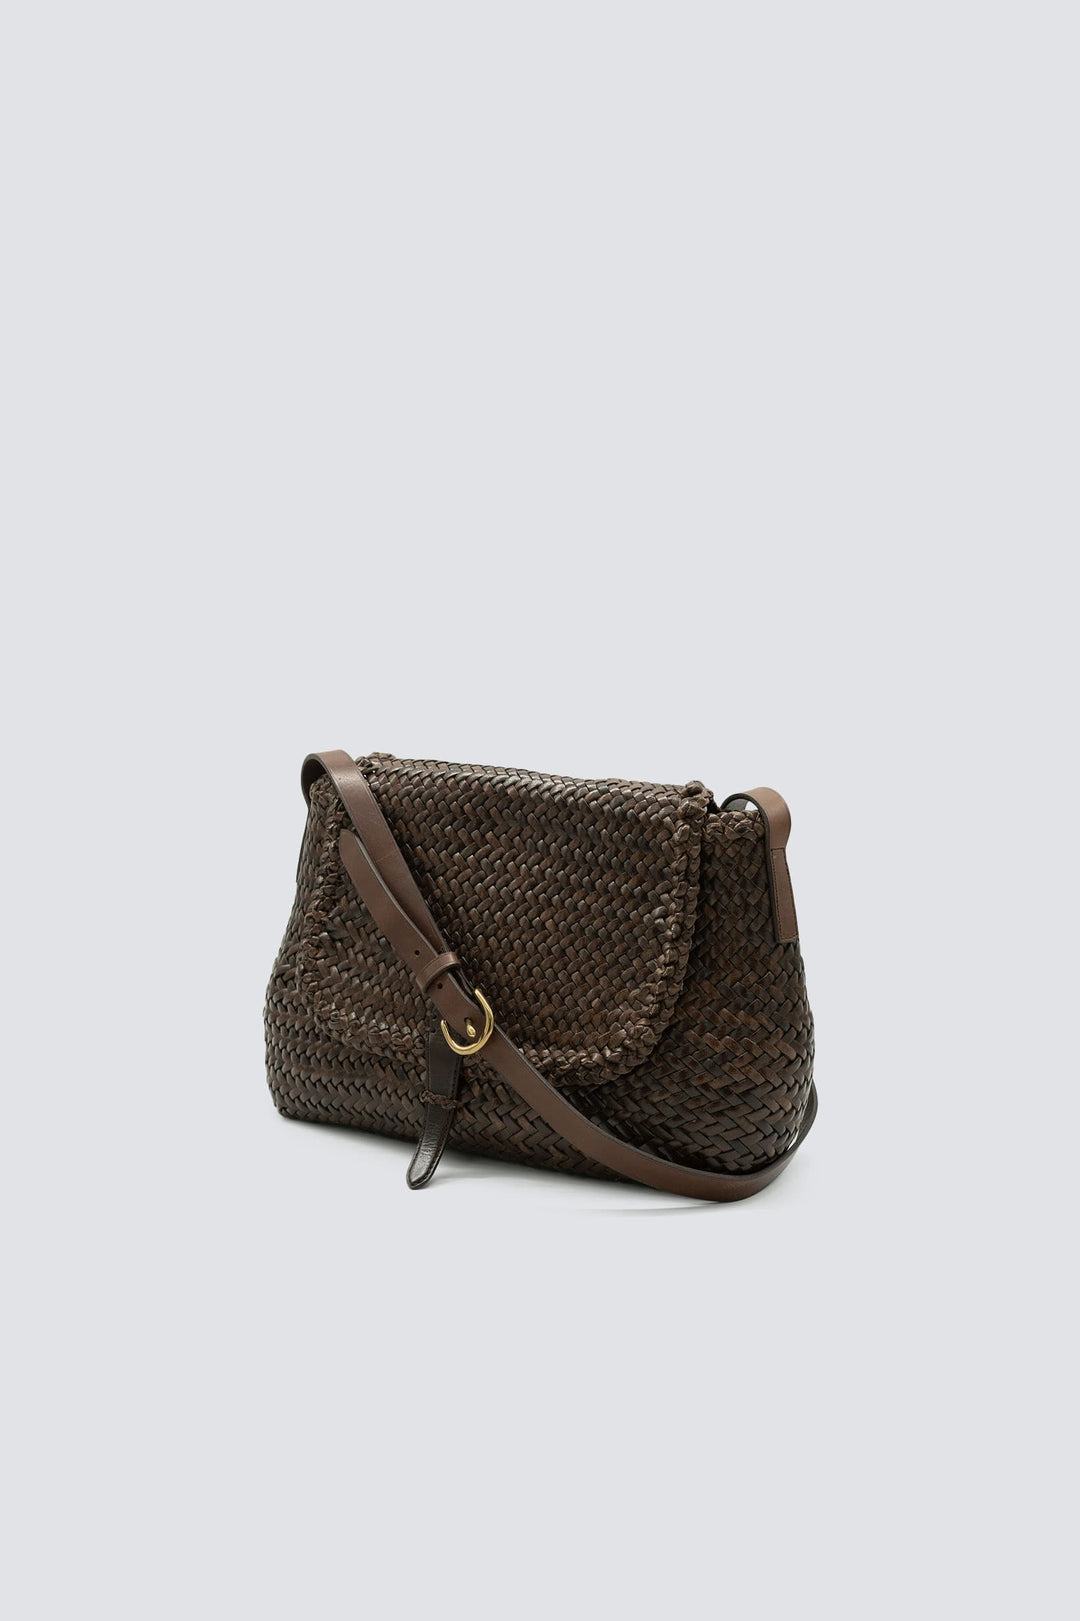 Dragon Diffusion woven leather bag handmade - City Bag Big Dark Brown